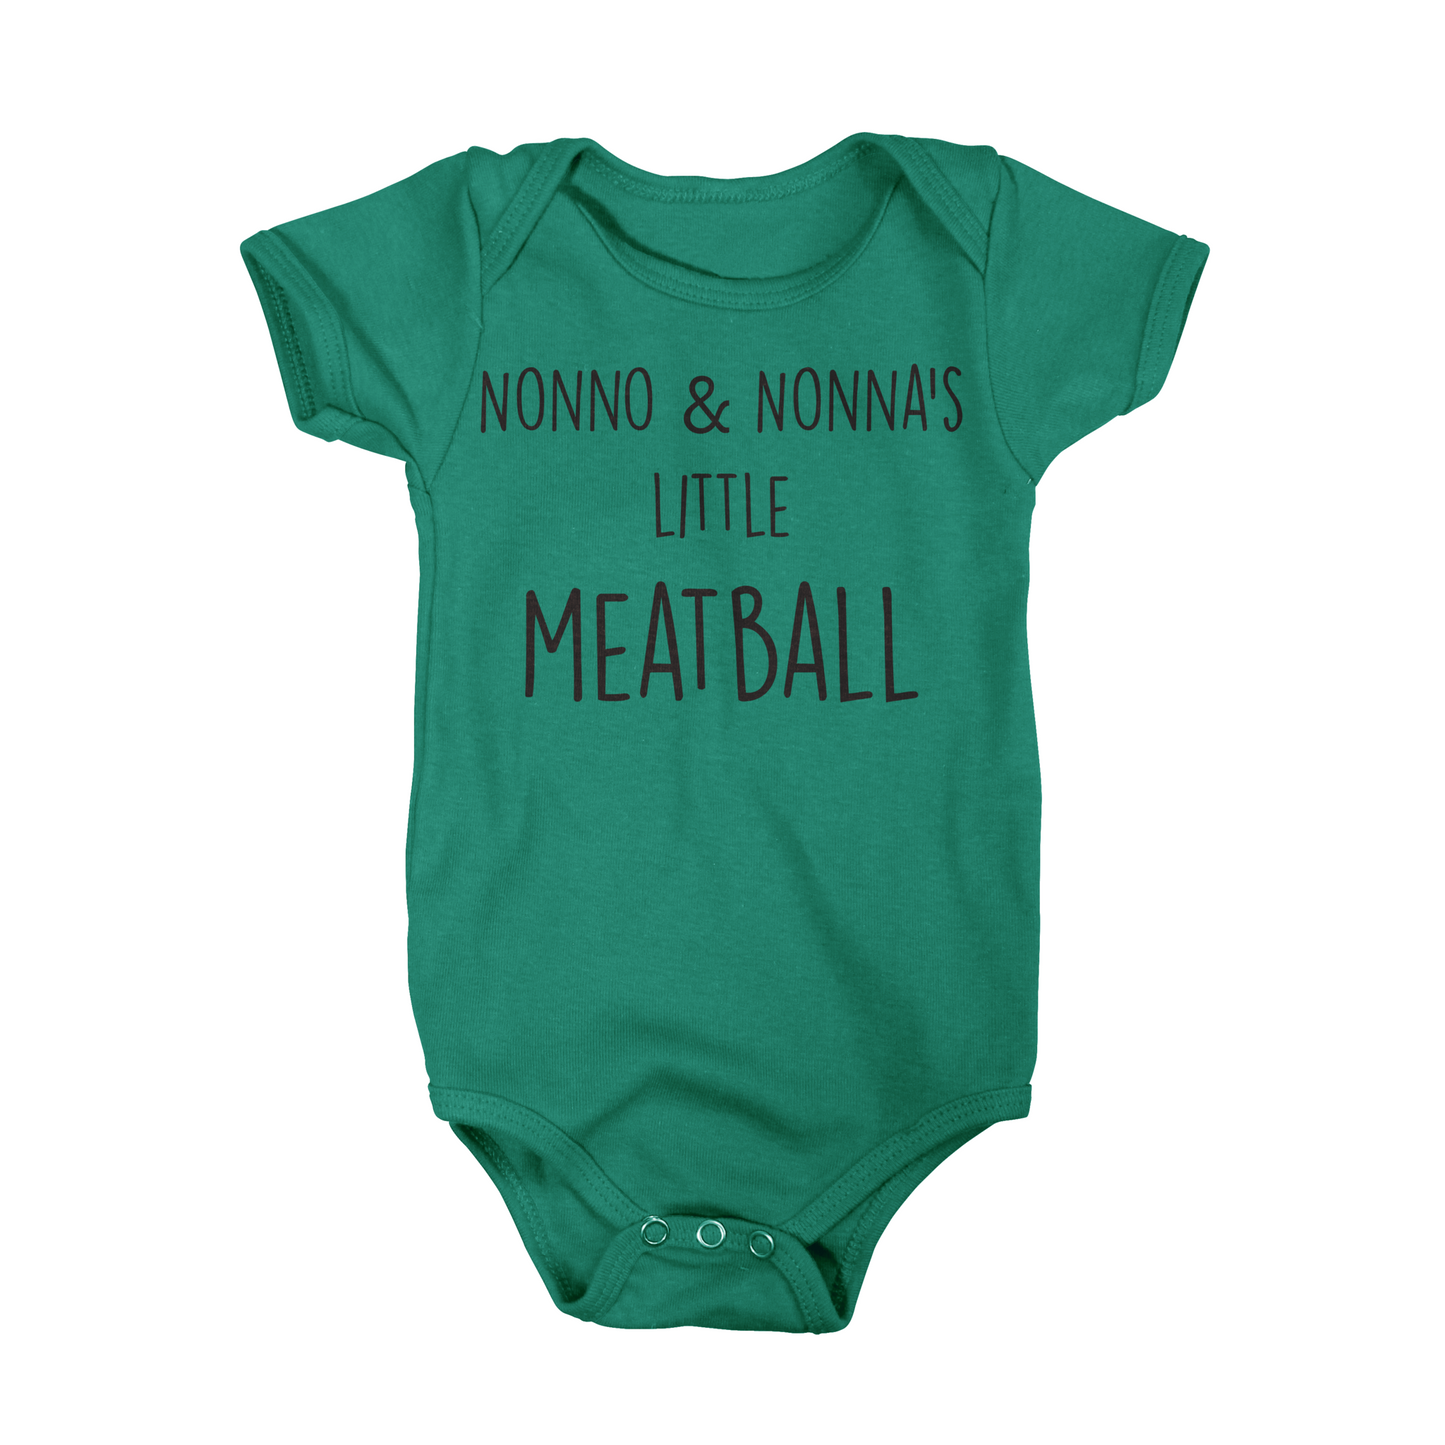 Nonno & Nonna's Little Meatball